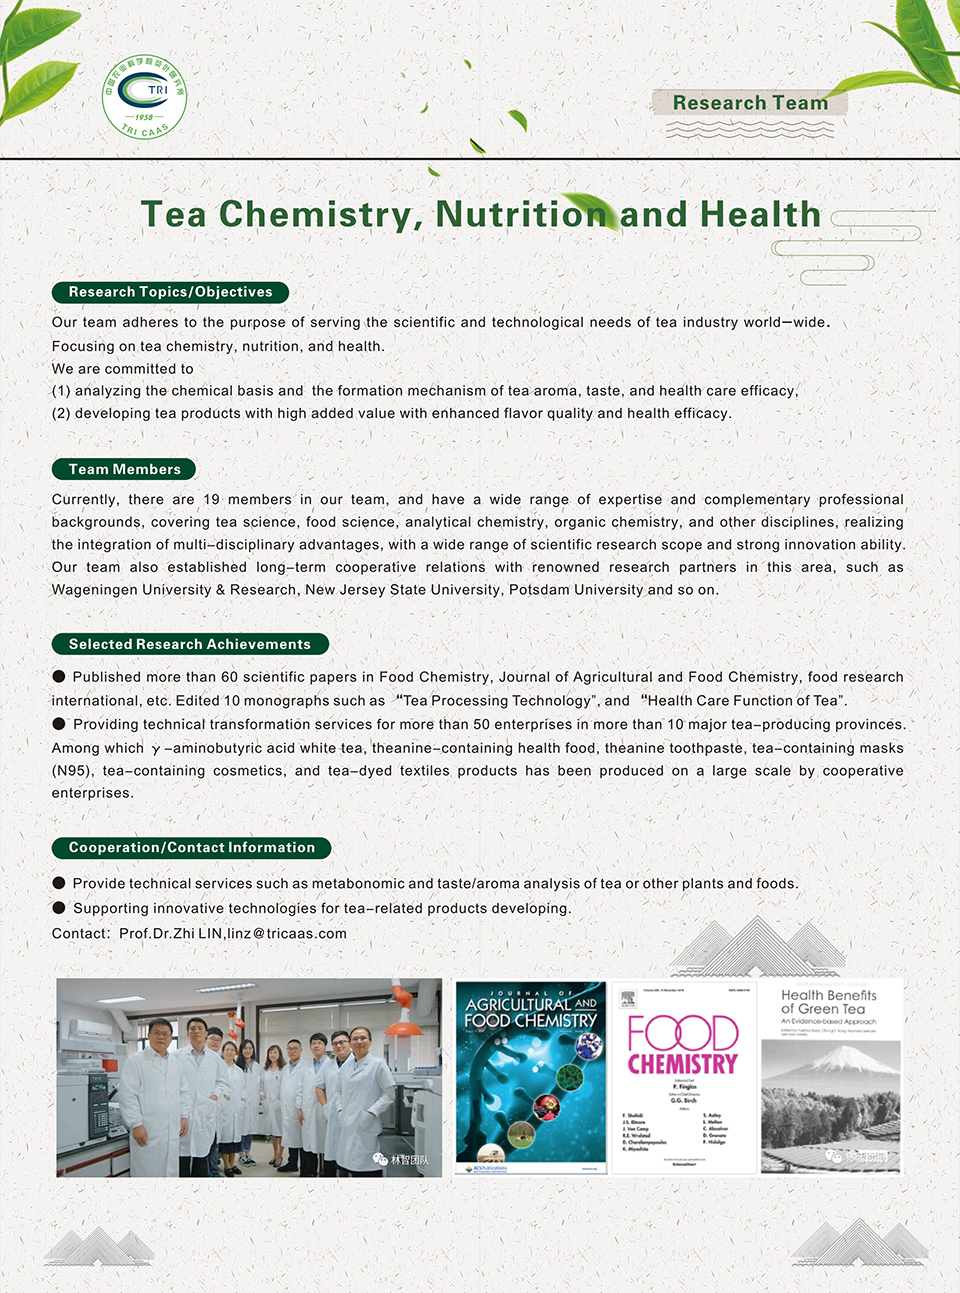 7-Tea Chemistry, Nutrition and Health.jpg